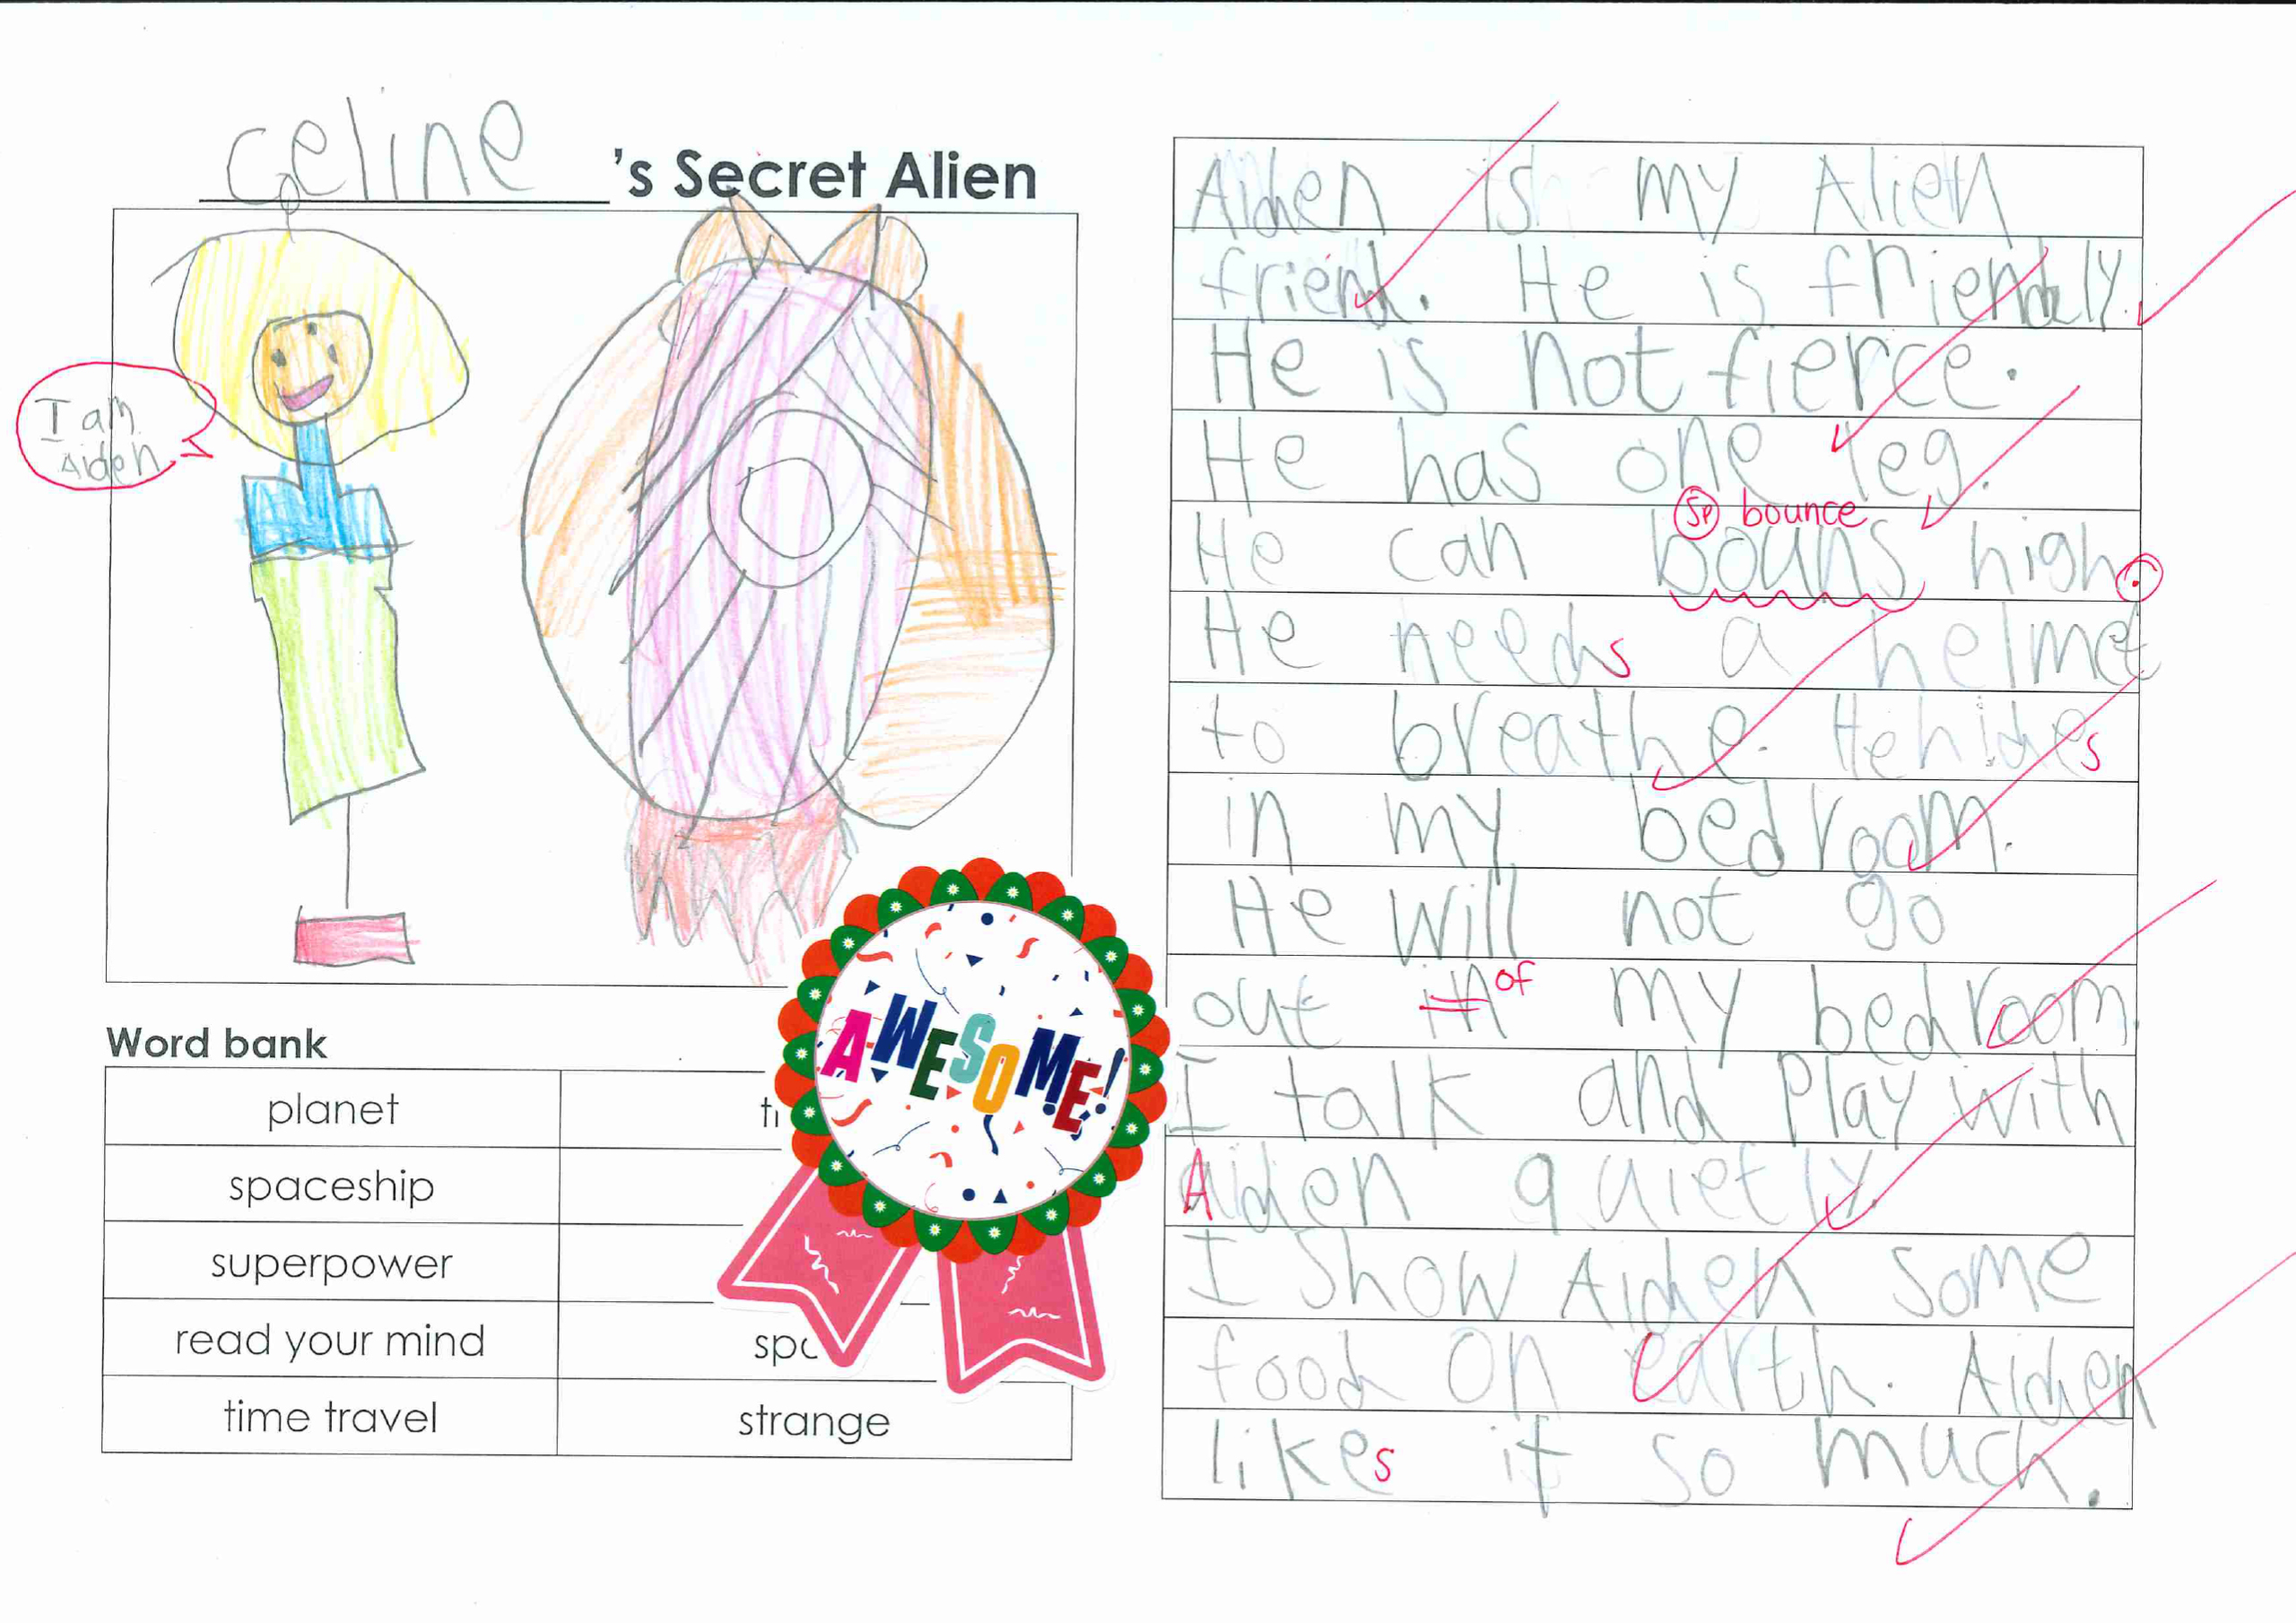 Celine’s Secret Alien